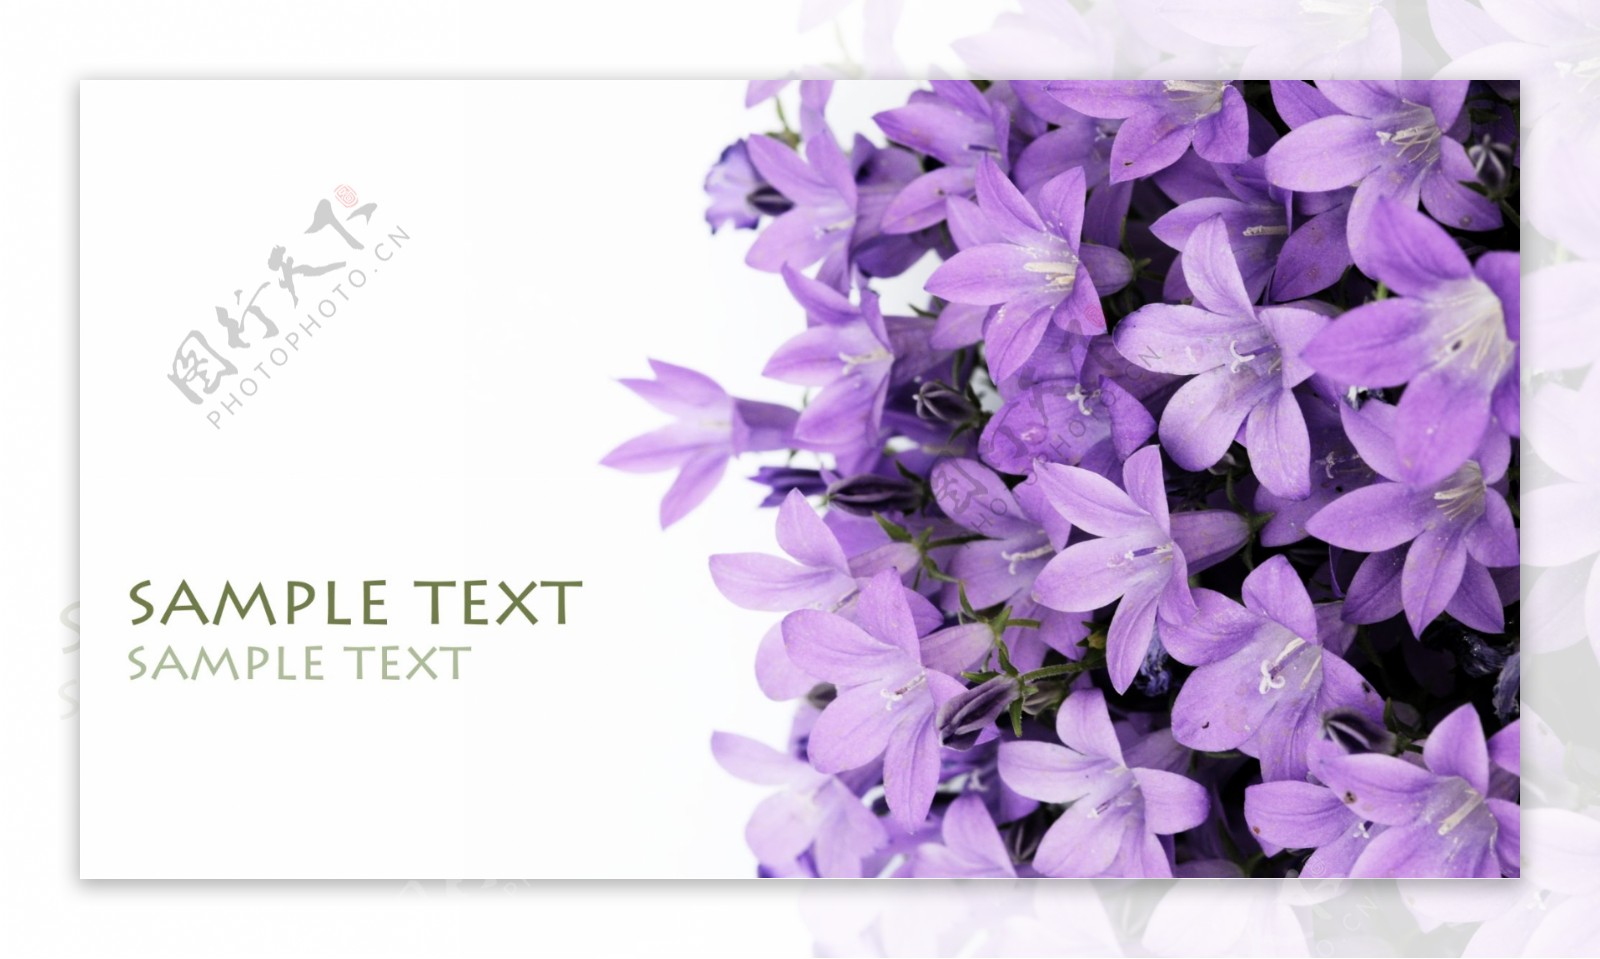 紫色百合花精品图片素材